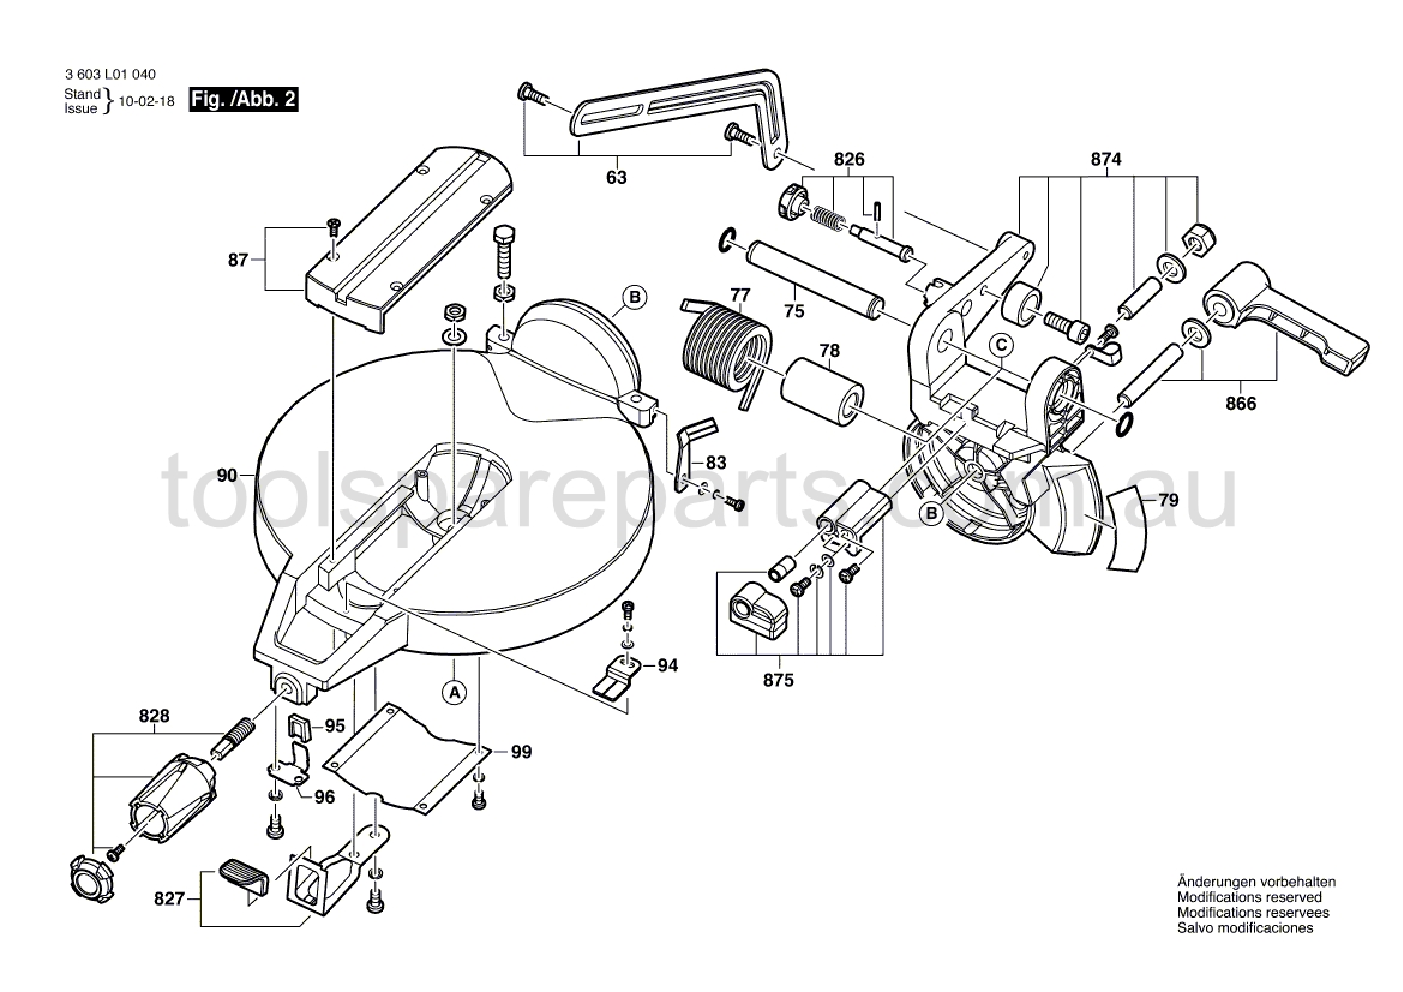 Bosch PCM 1800 3603L01040  Diagram 2